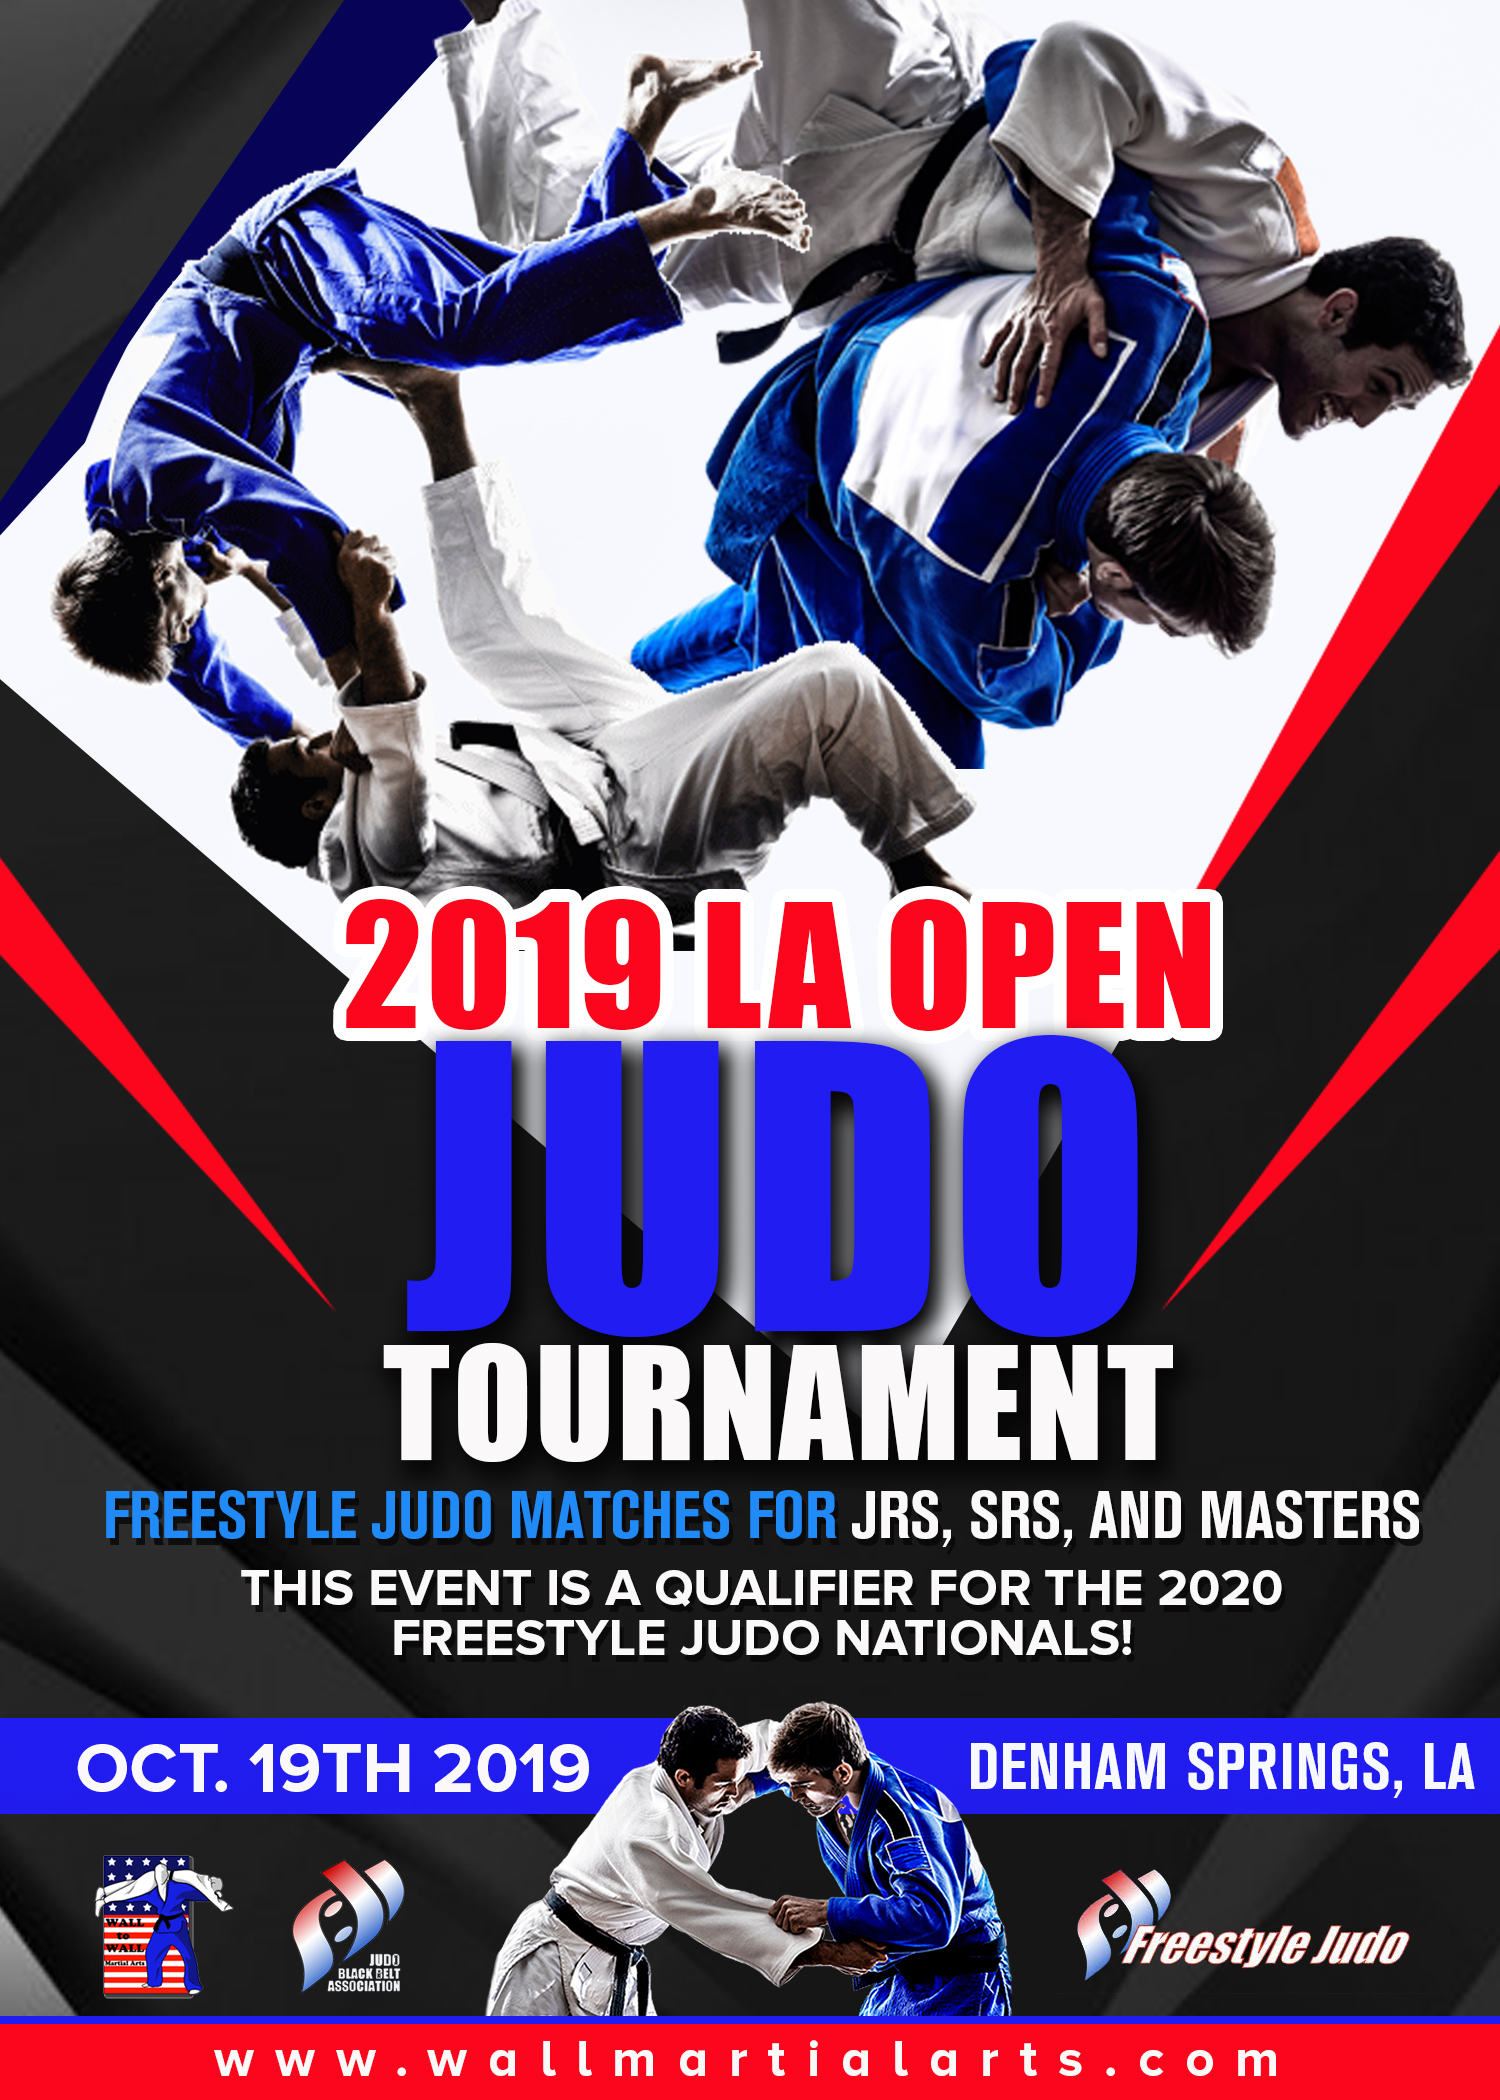 Wall to Wall Martial Arts » LA Open Judo Tournament